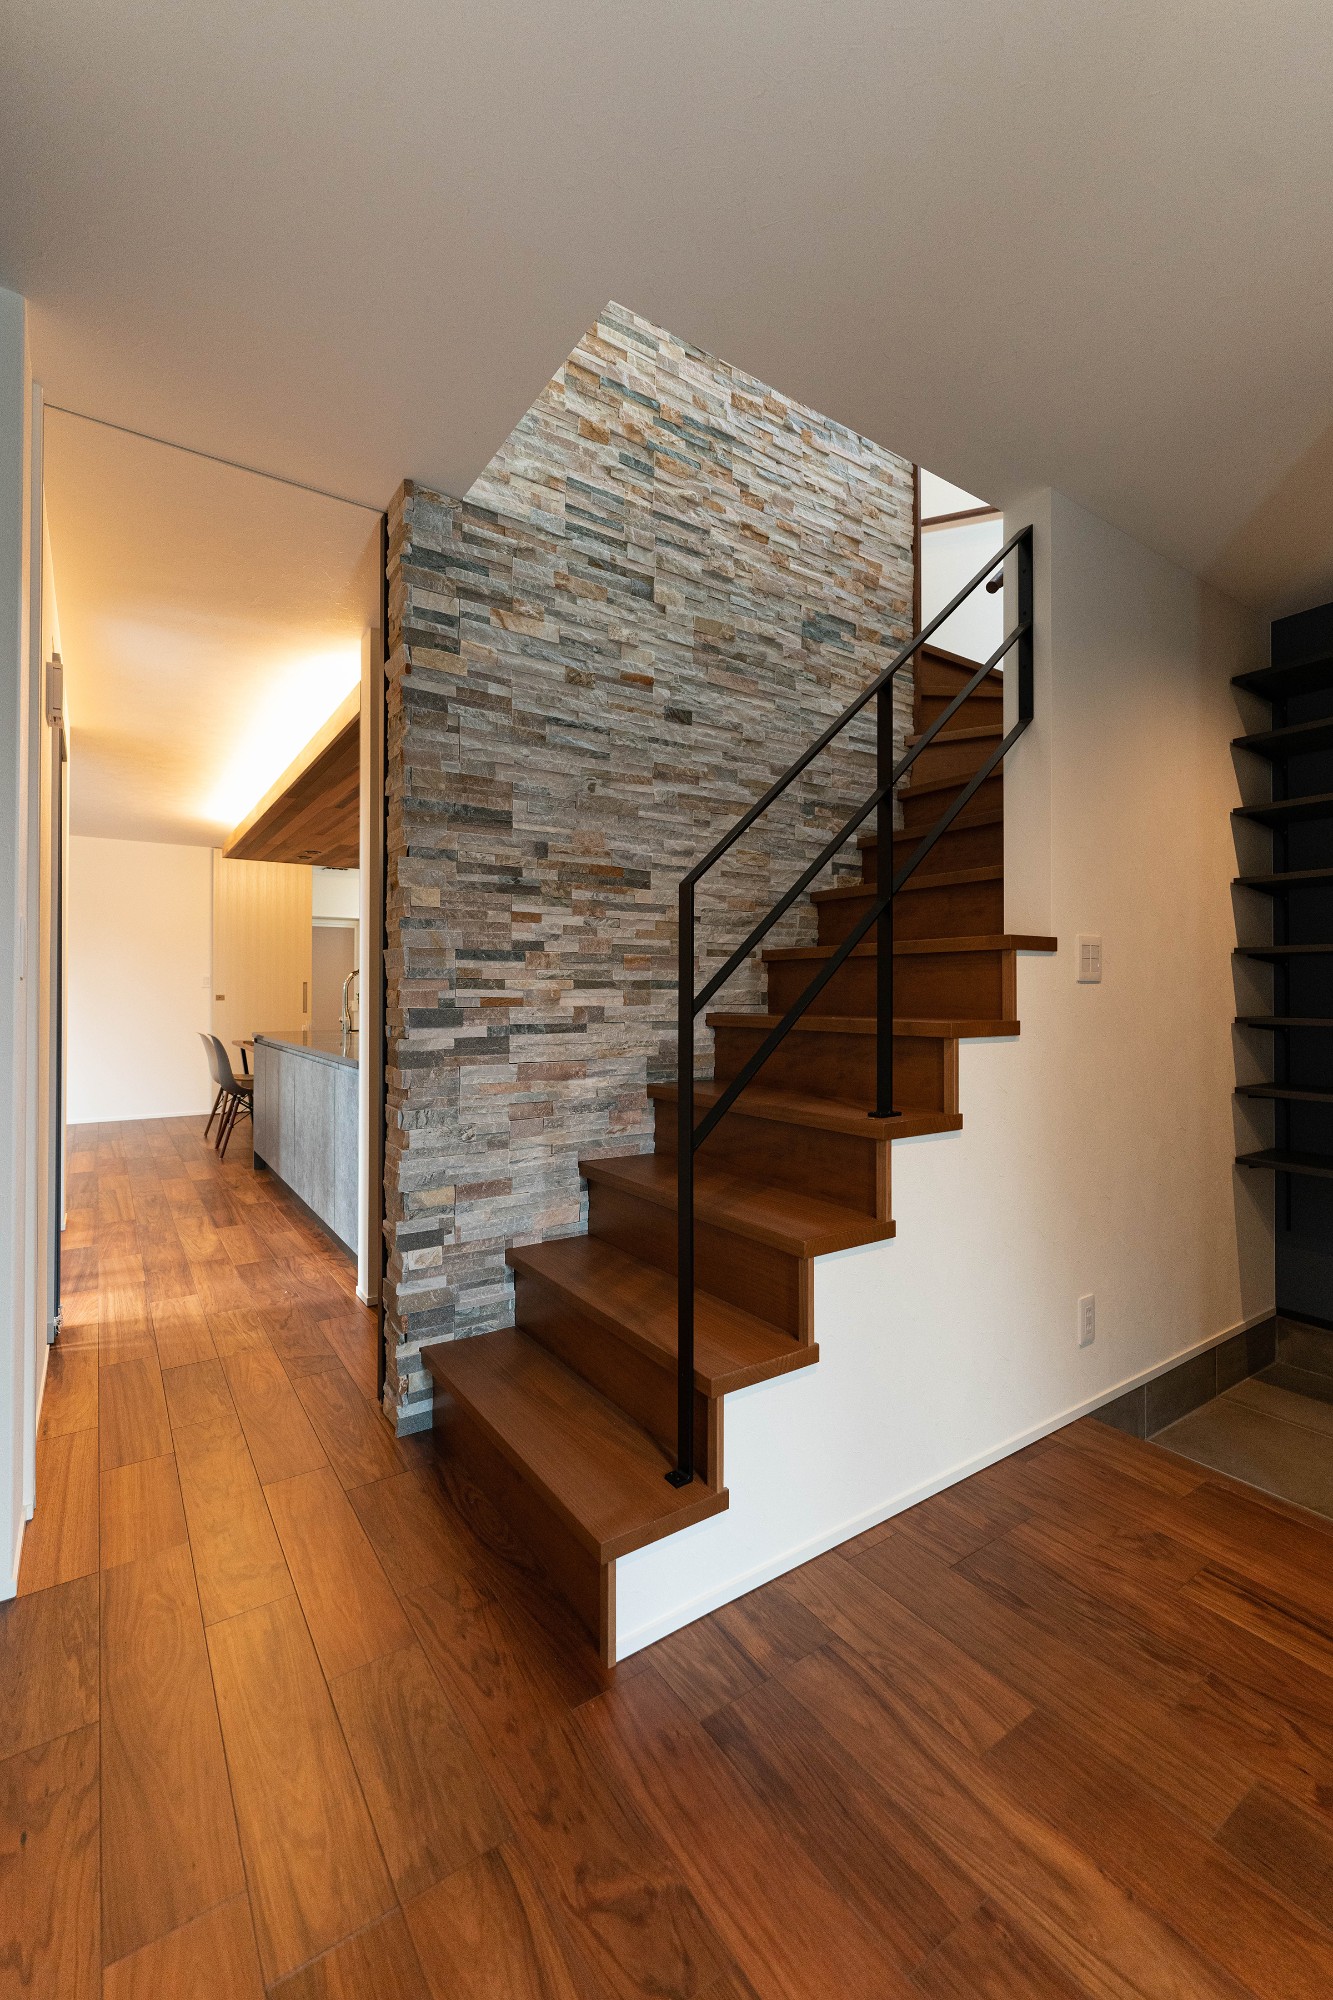 玄関に入ってすぐに目に入る階段ホールには凹凸のある石のタイルを貼り、ブラックの鉄骨手摺を組み合わせて重厚感のある空間に